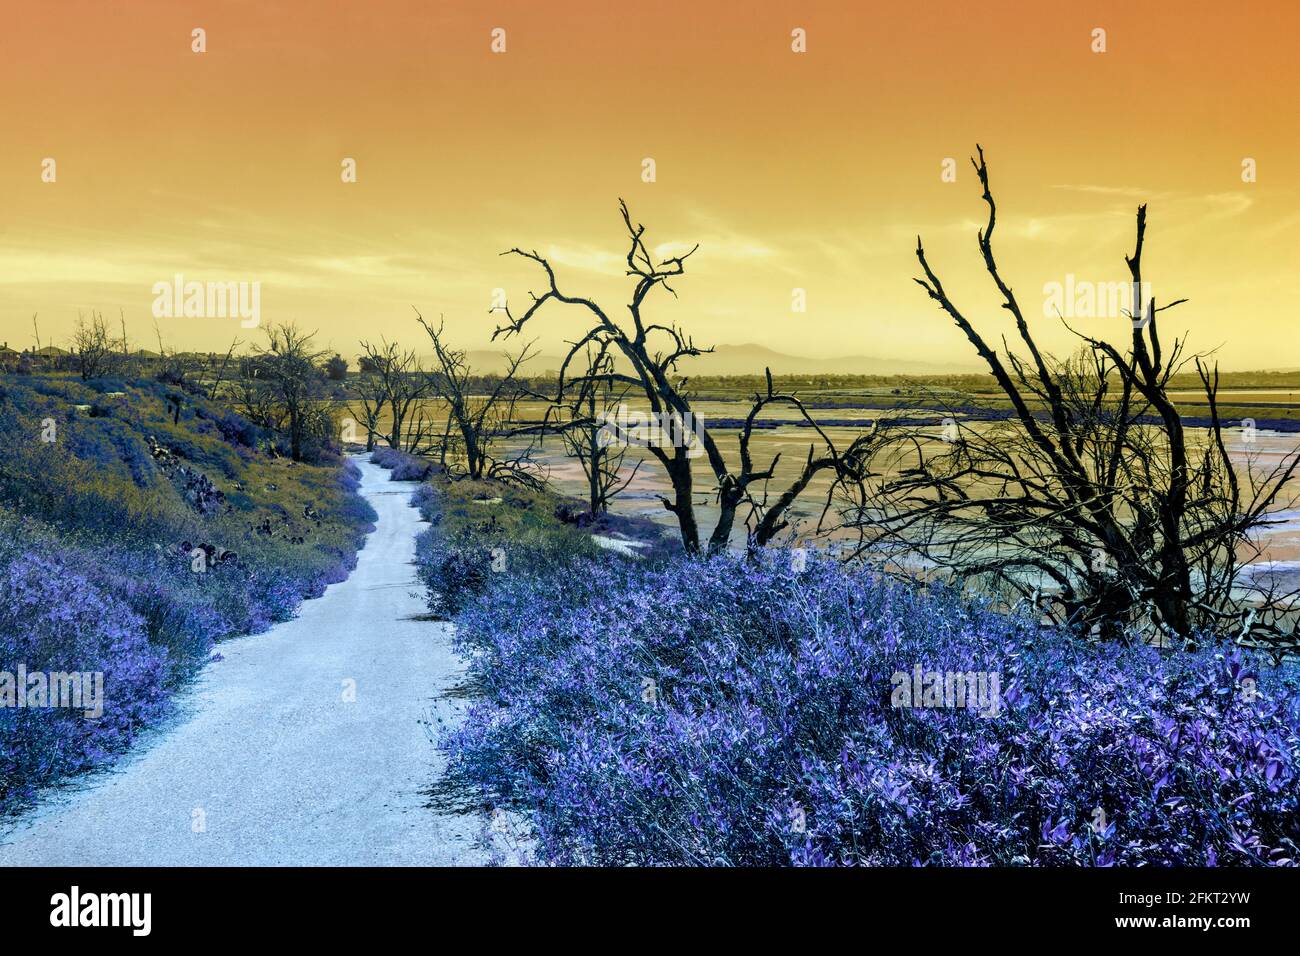 Paesaggio surrealistico di alberi lungo un sentiero con effetti ultraterrani e sognanti. Foto Stock